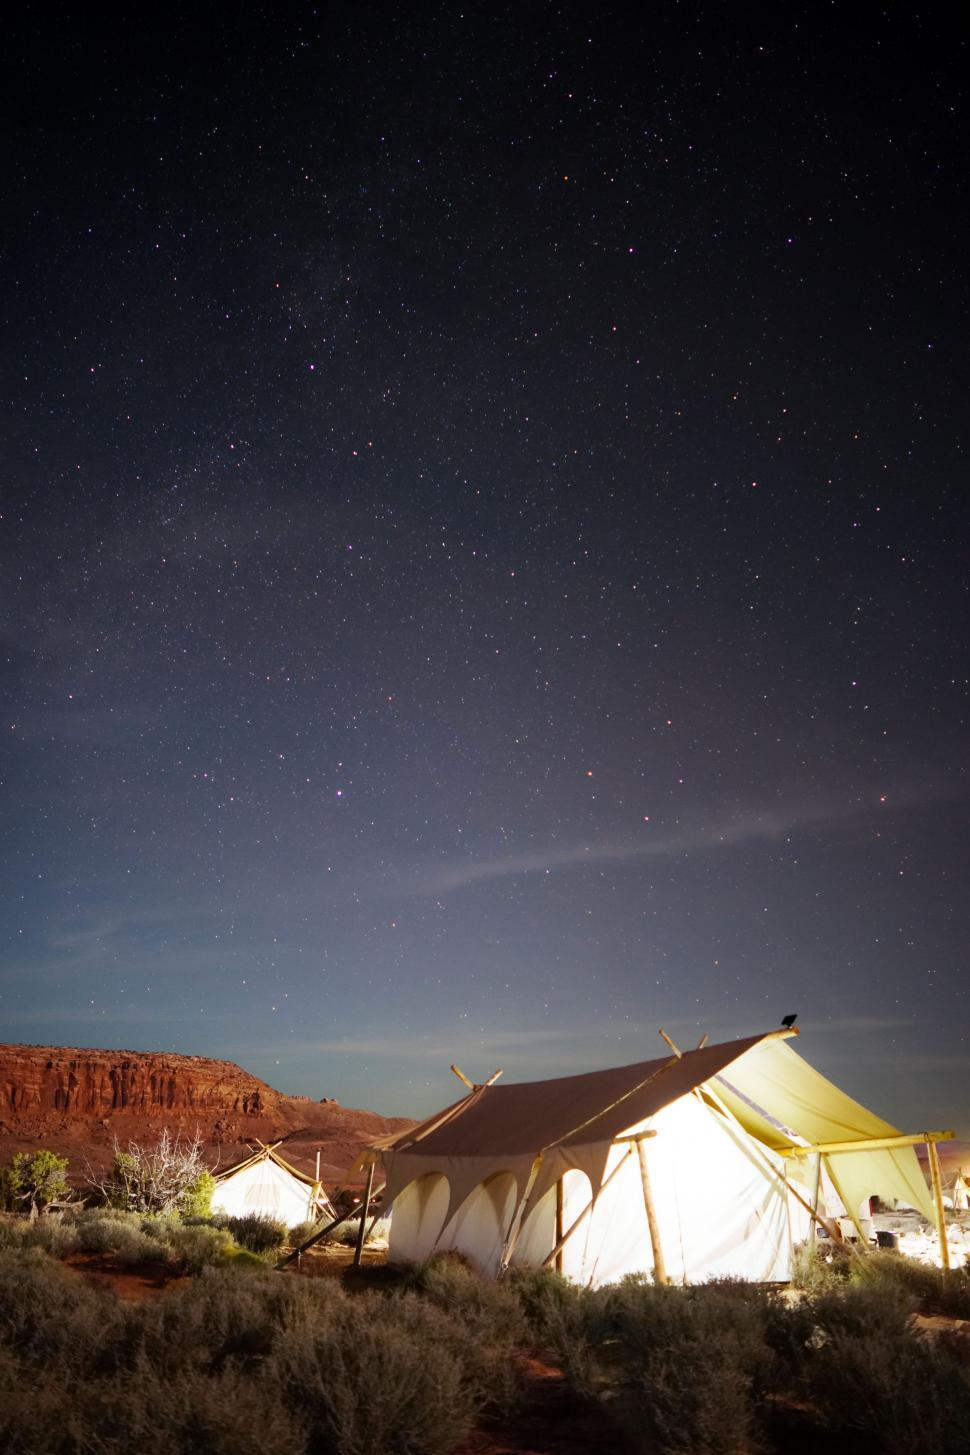 Free Image of Illuminated Tent in Desert Night 